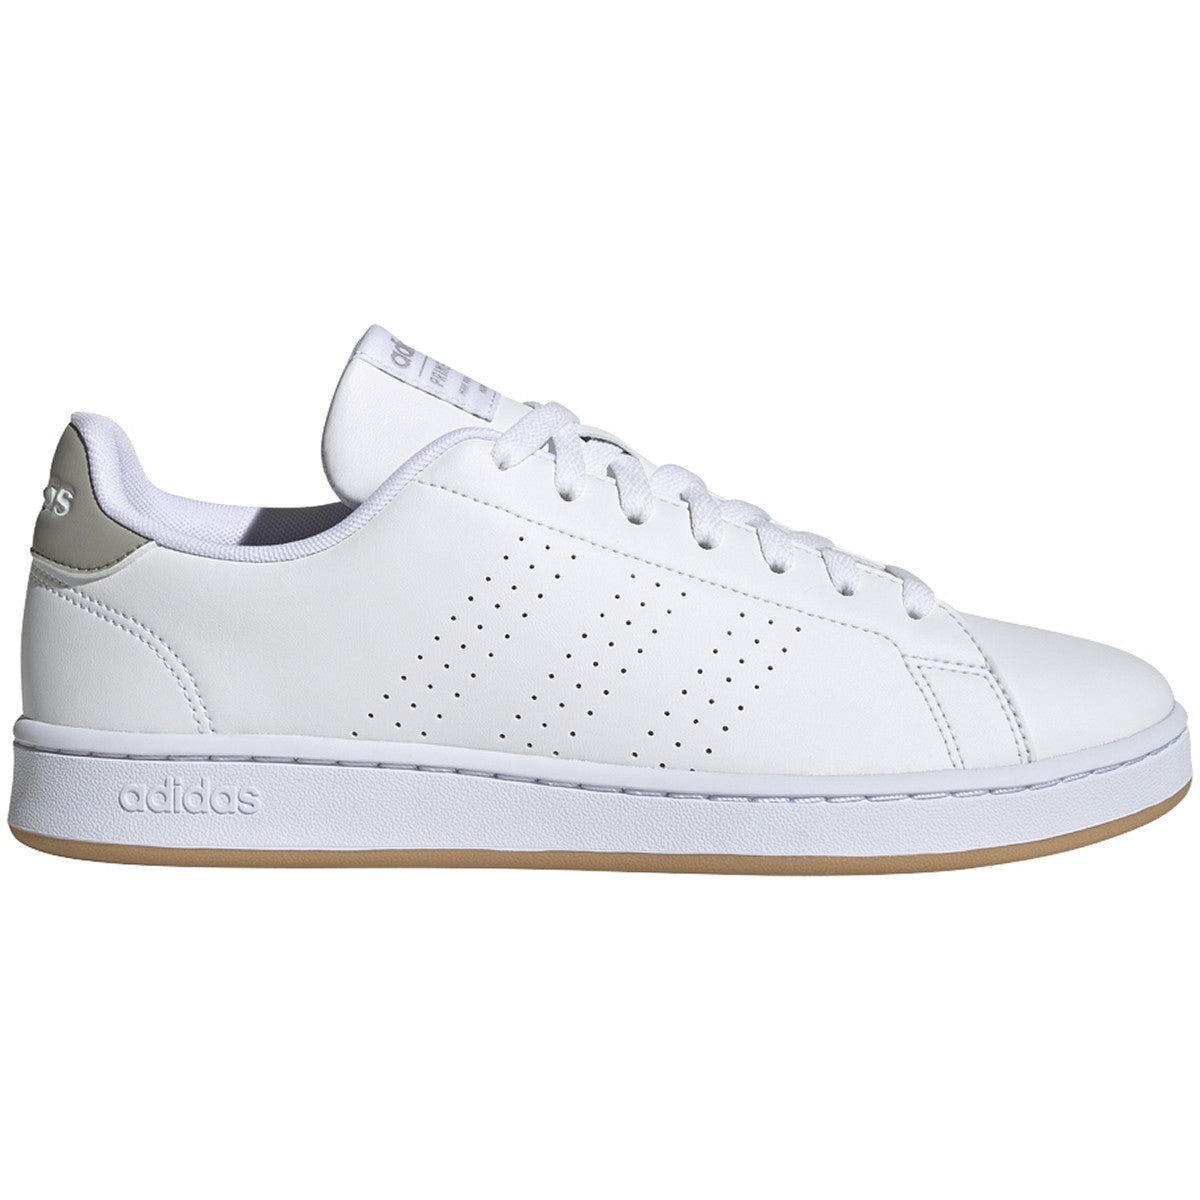  adidas Women's Grand Court Tennis Shoe, White/White/Crystal  White, 8